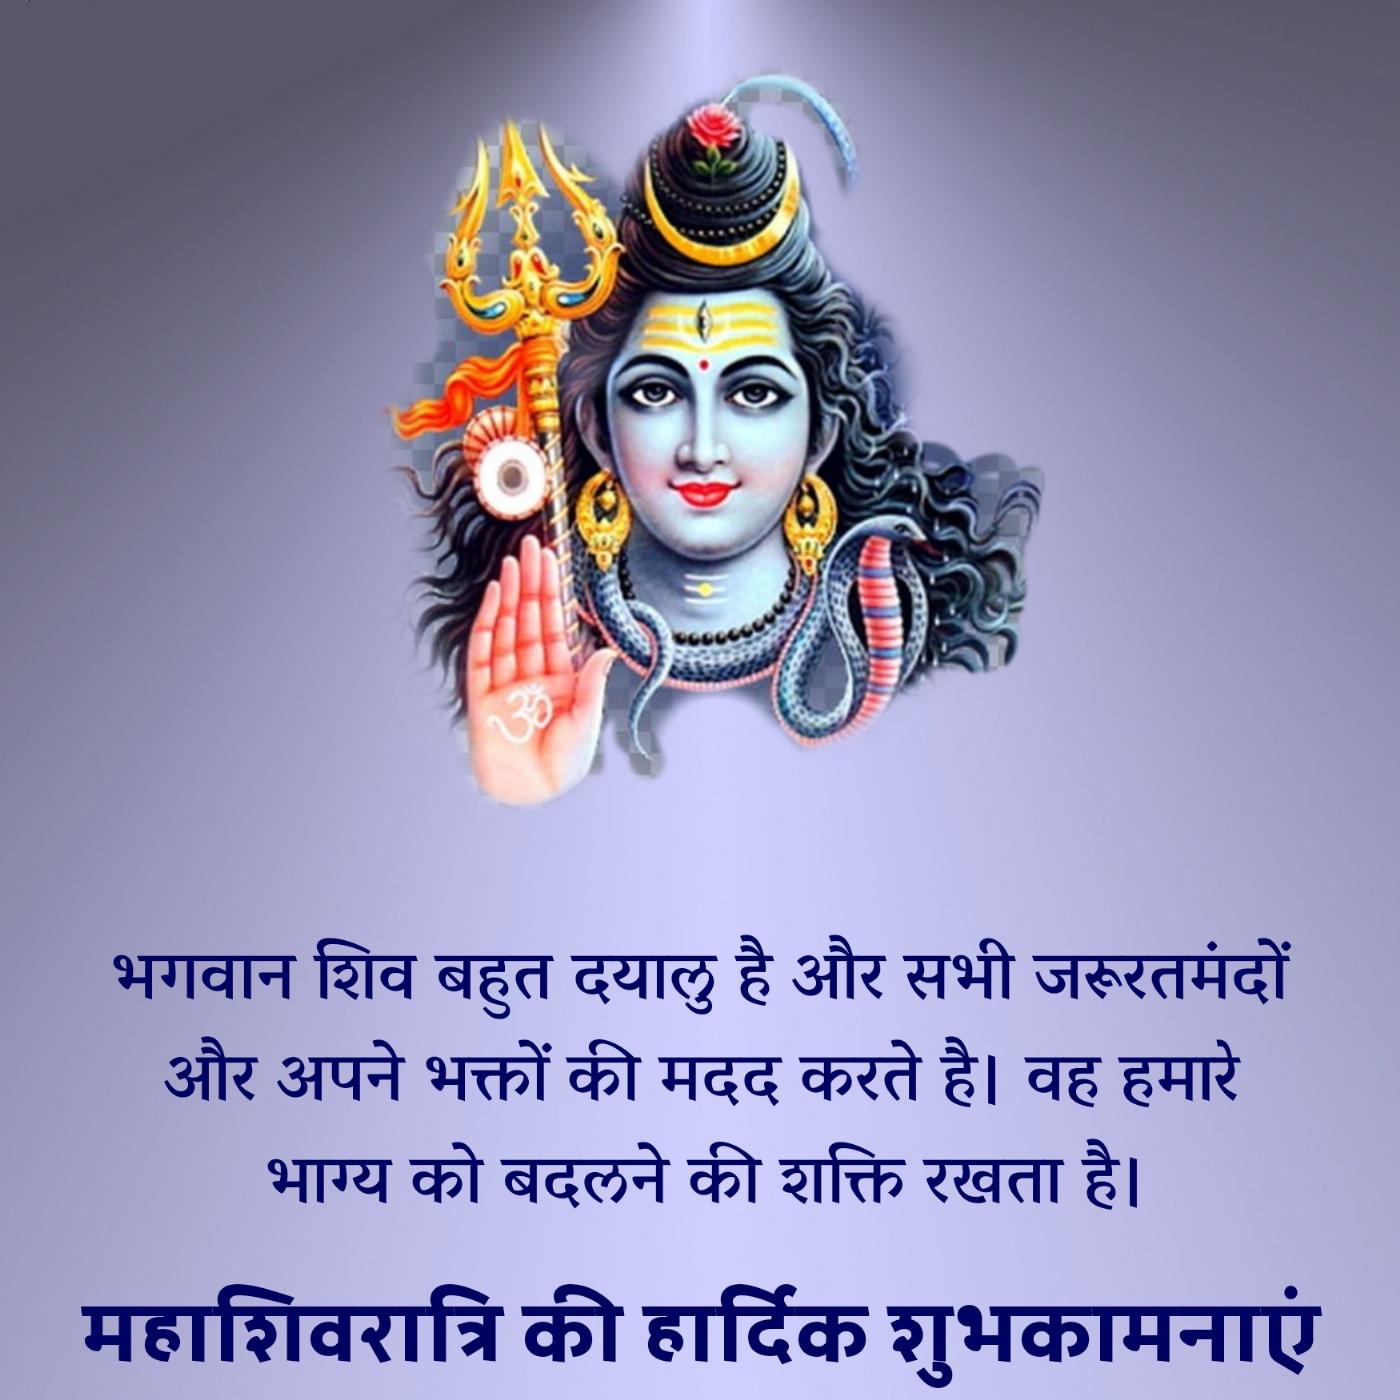 भगवान शिव बहुत दयालु हैं और सभी जरूरतमंदों और अपने भक्तों की